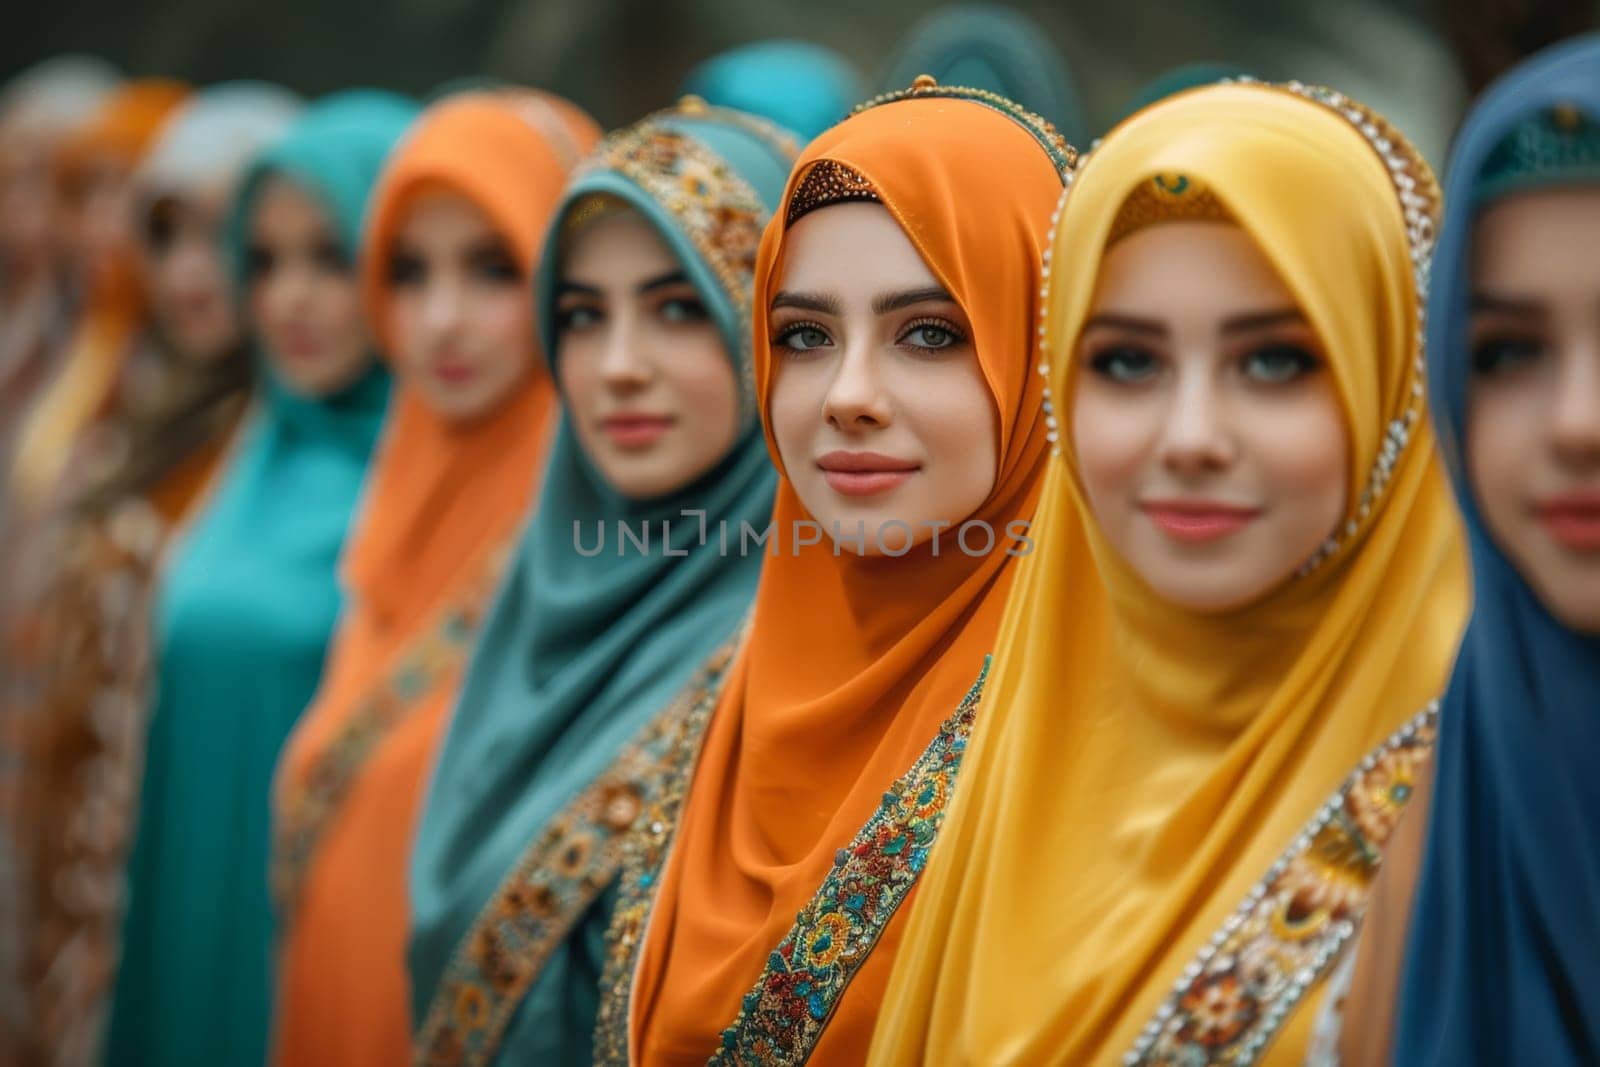 Young Muslim women on Eid al-Adha holiday by Lobachad